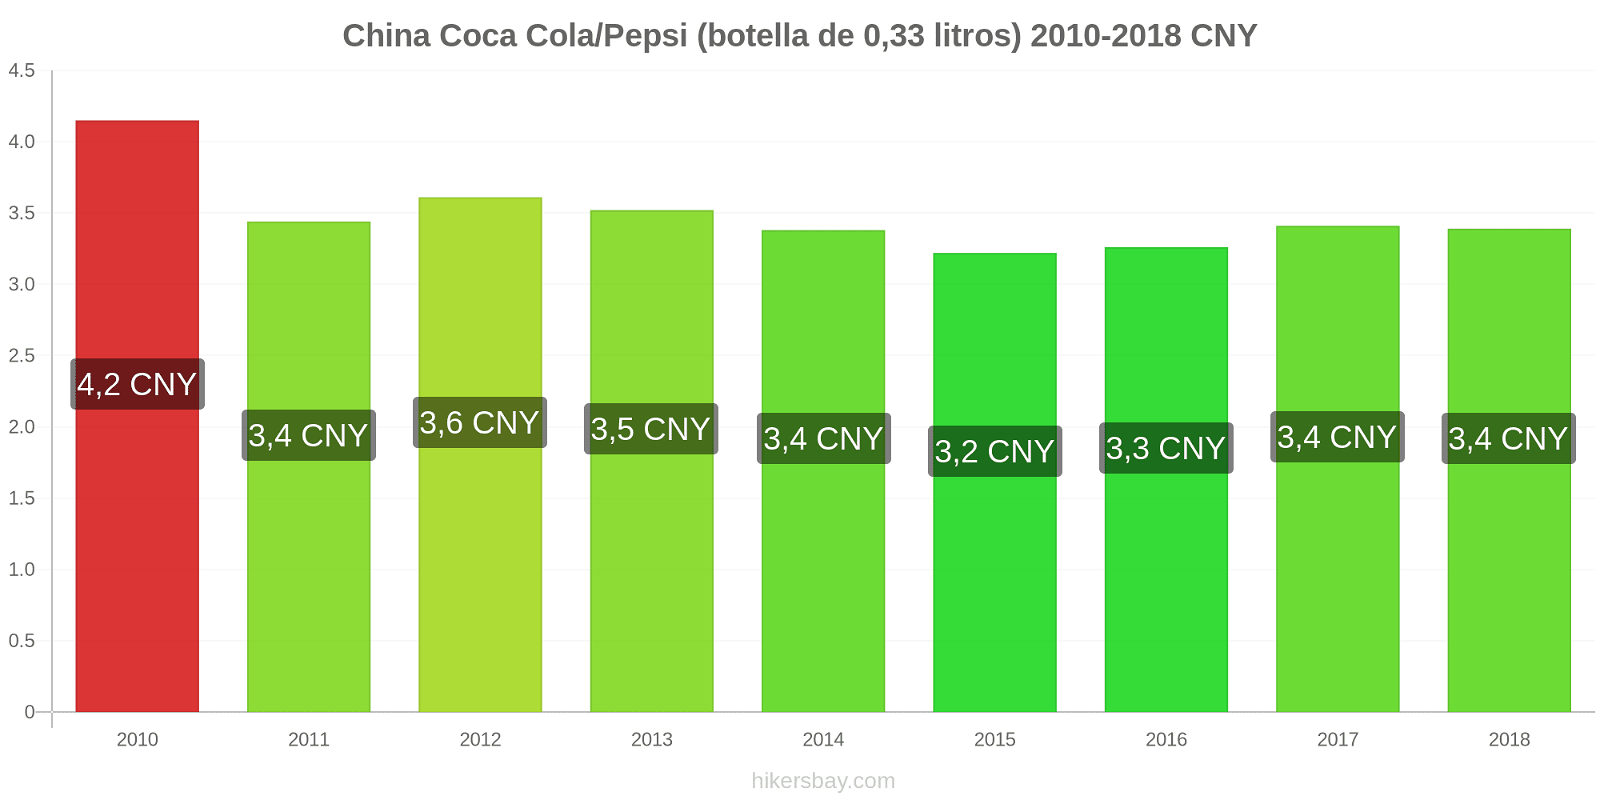 China cambios de precios Coca-Cola/Pepsi (botella de 0.33 litros) hikersbay.com